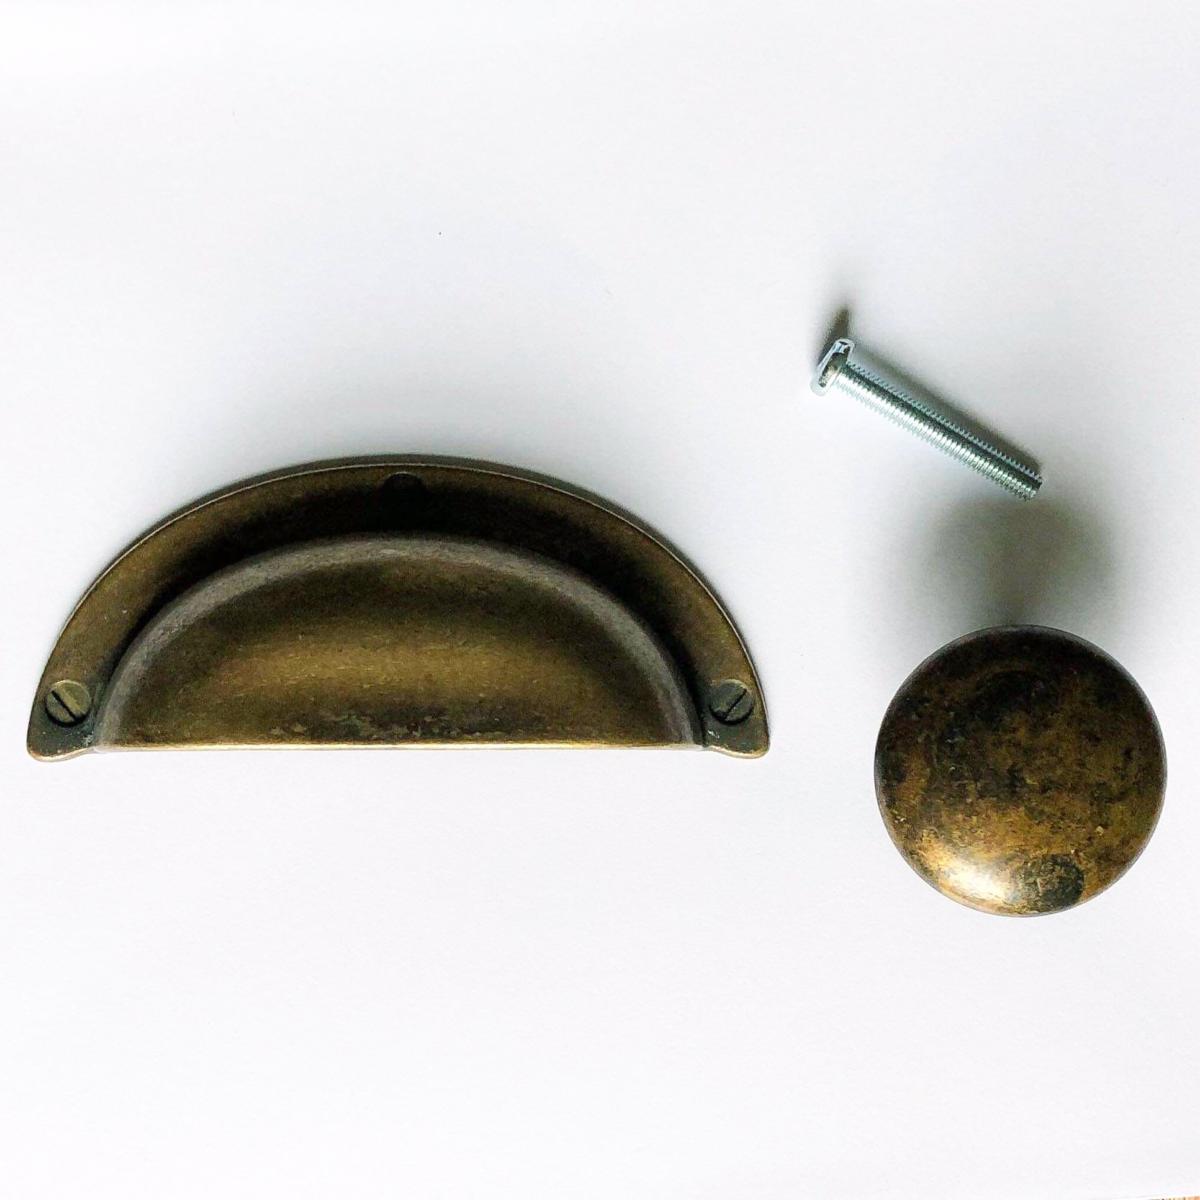 Aged Brass "Button" Cupboard Knob, 35mm